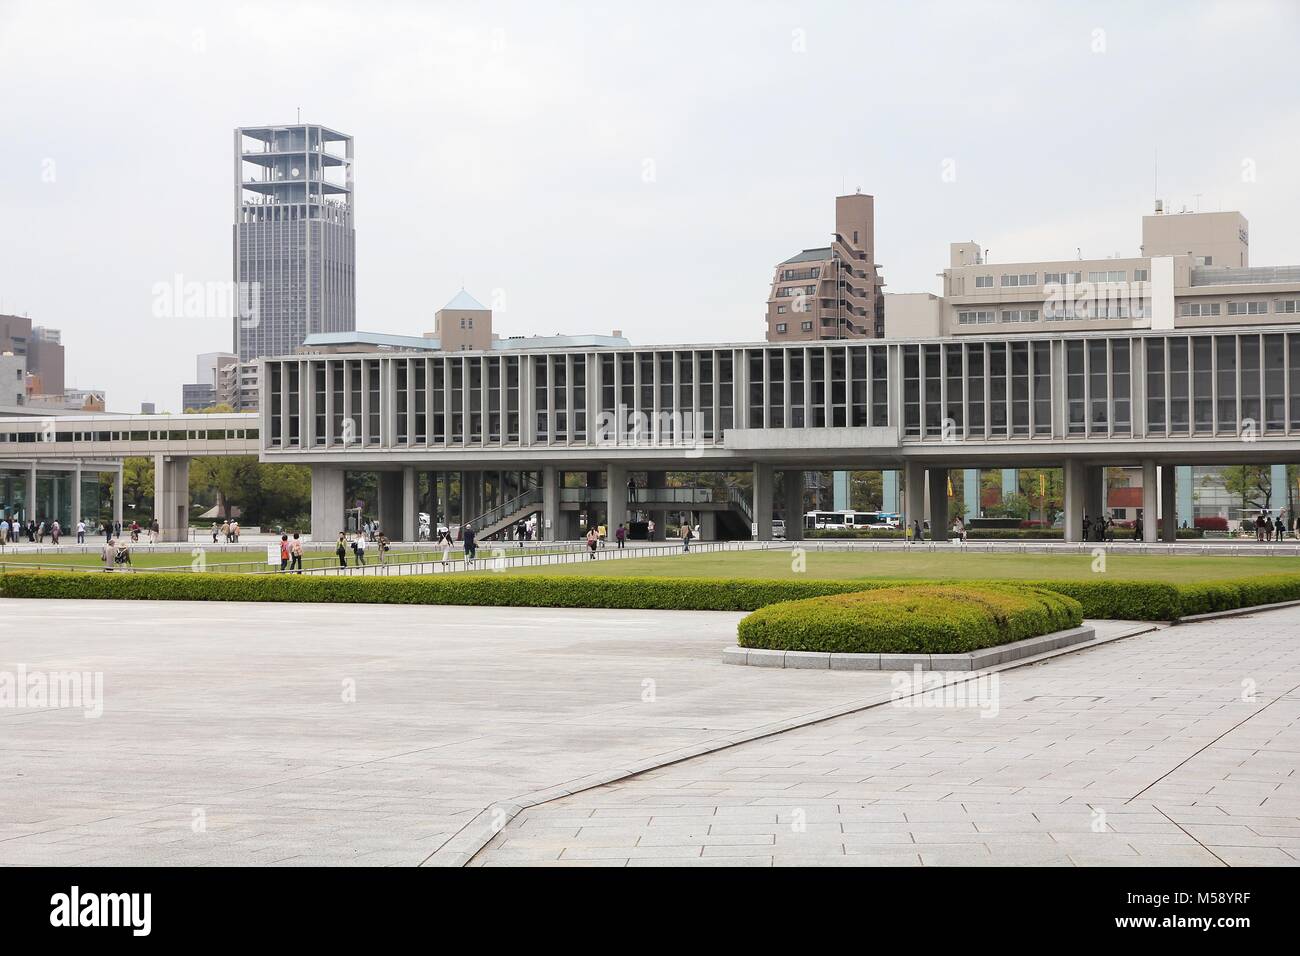 HIROSHIMA, Japan - 21 April, 2012: die Menschen besuchen Peace Memorial Museum Hiroshima, Japan. Es informiert die Menschen über die berüchtigten Atombombe und wa Stockfoto